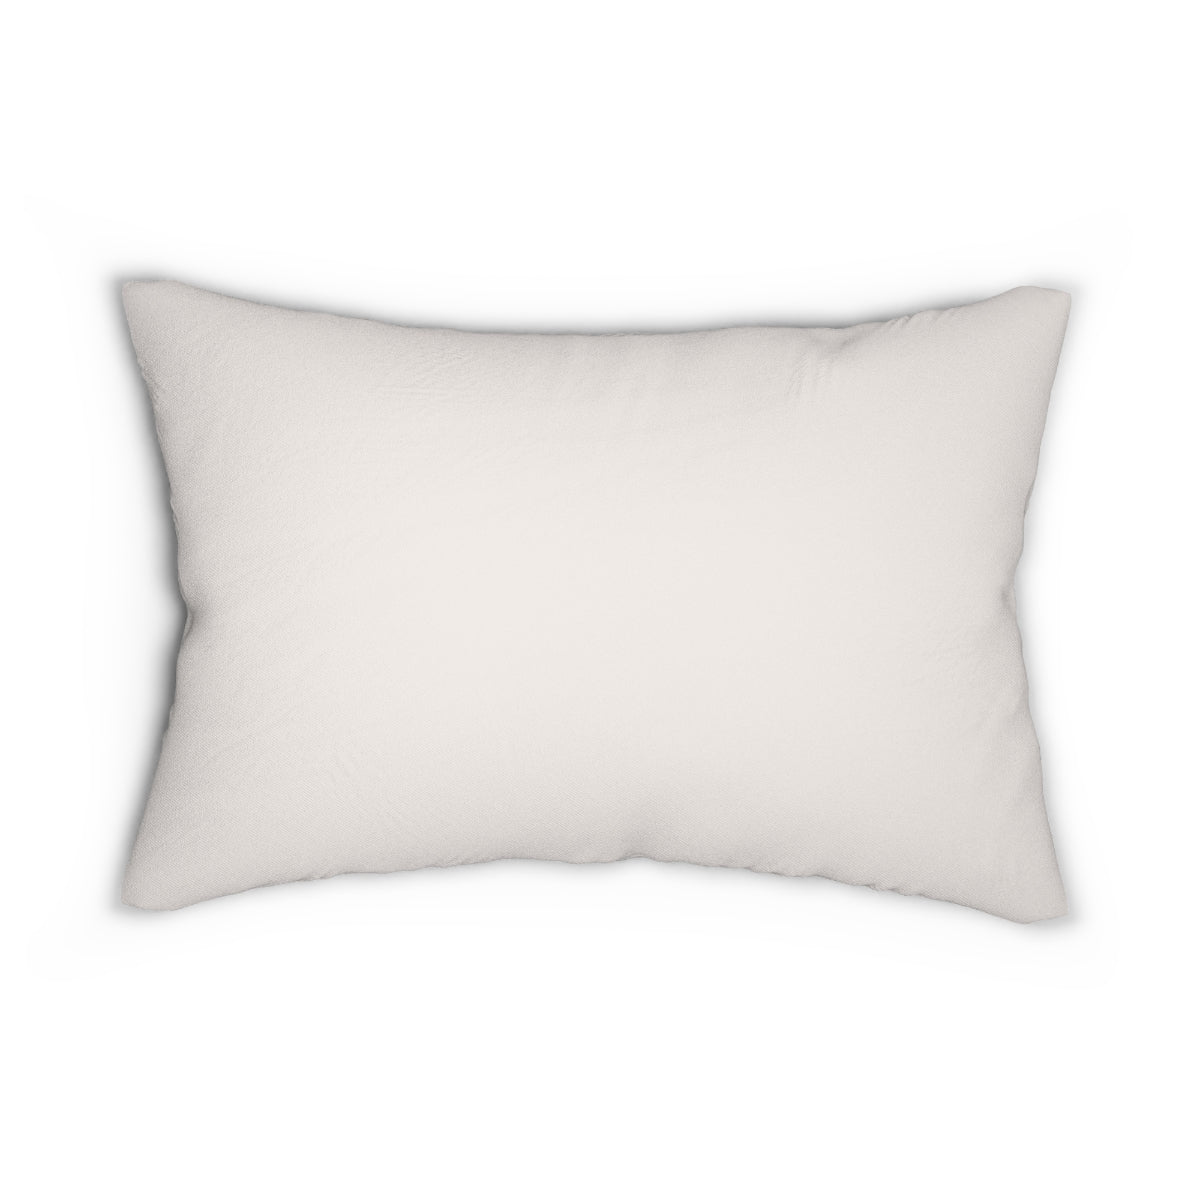 Kind Human Kind - Lumbar Pillow